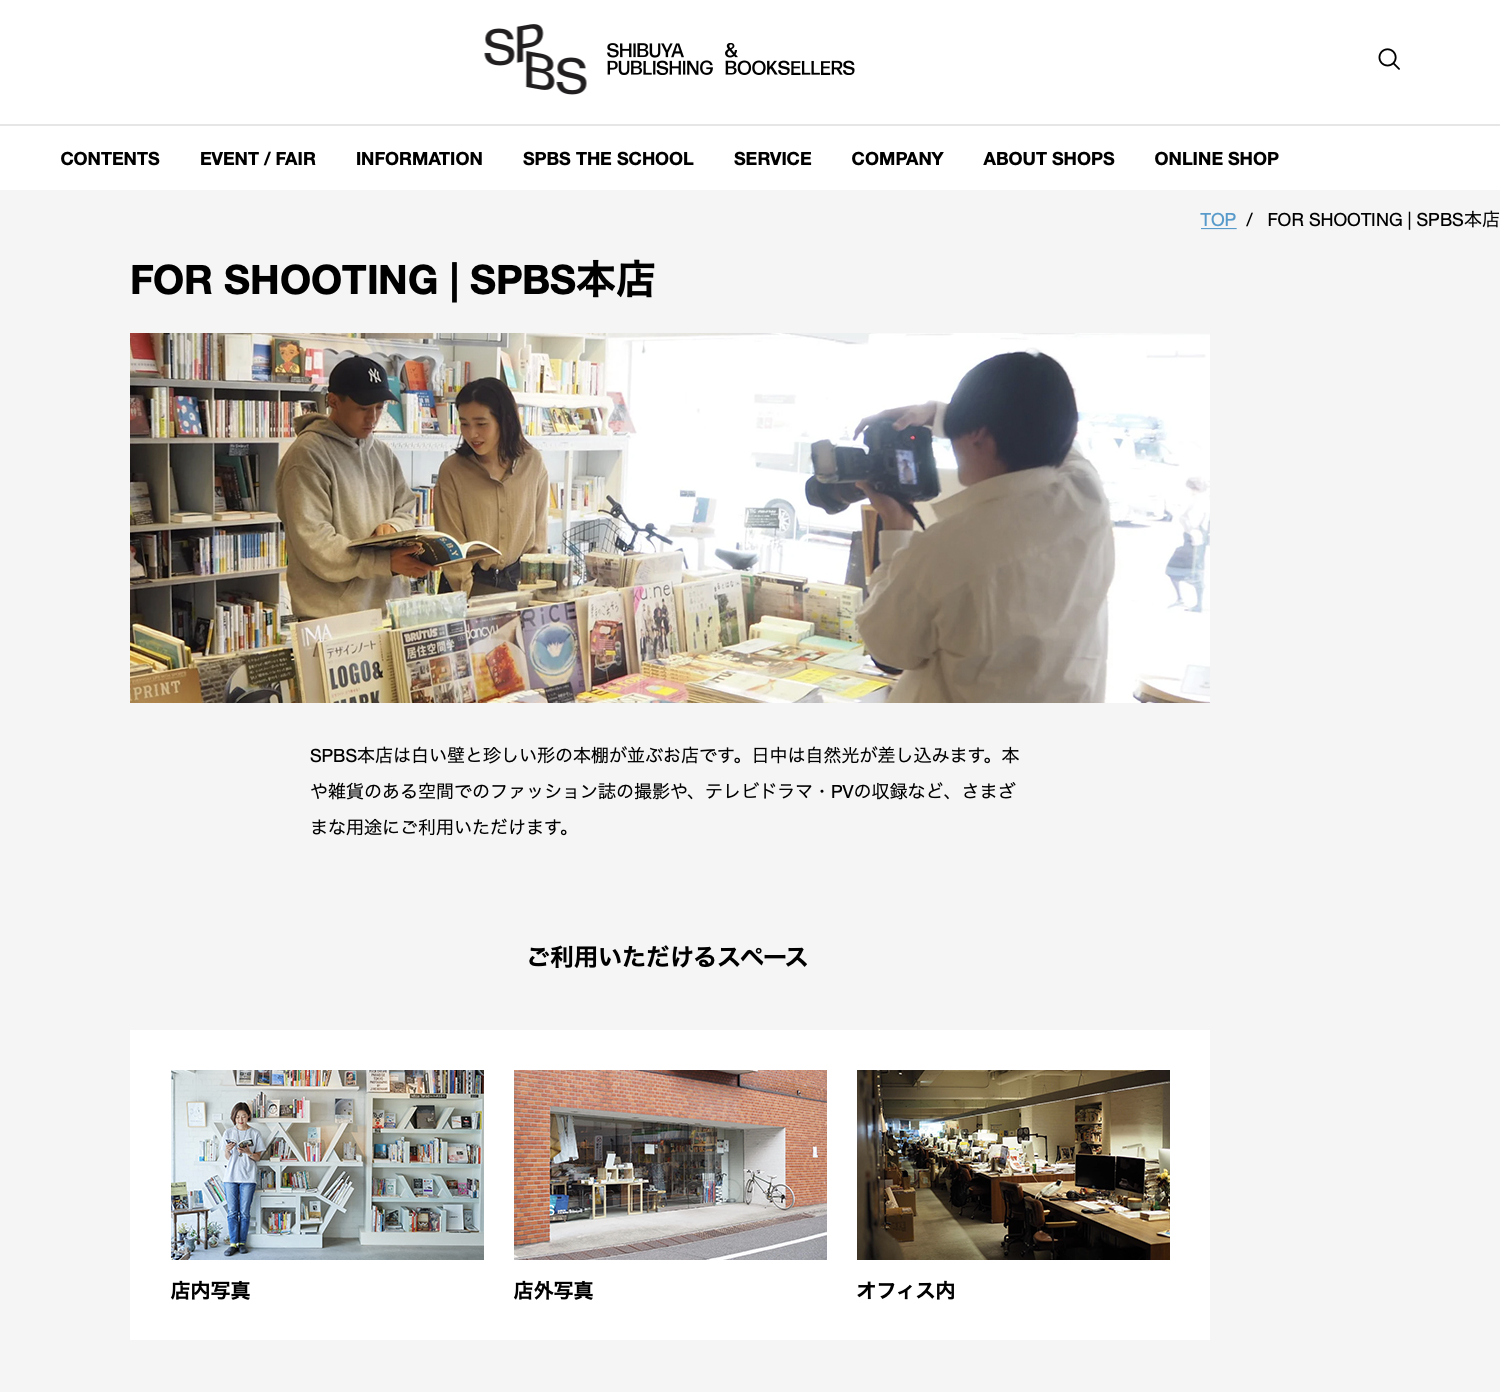 合同会社 SHIBUYA PUBLISHING & BOOKSELLERSの合同会社SHIBUYA PUBLISHING & BOOKSELLERS:動画制作・映像制作サービス